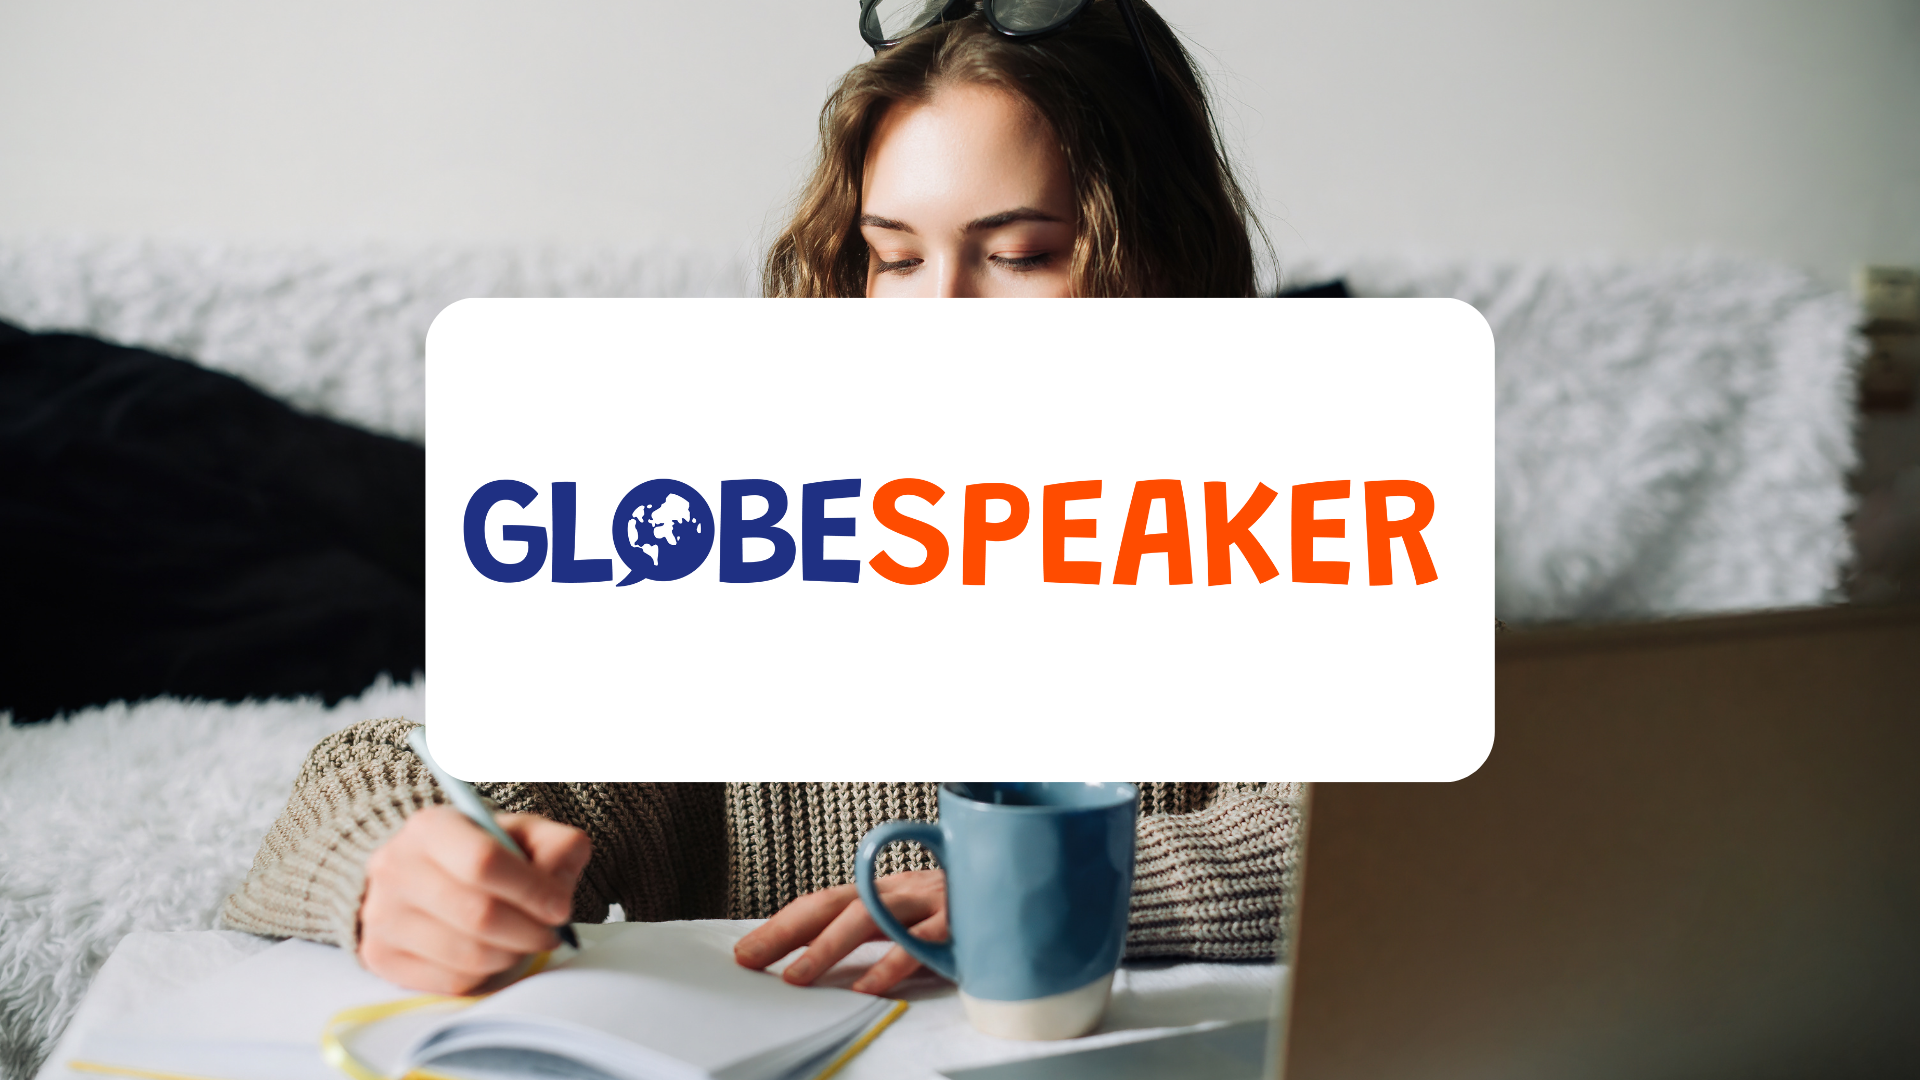 Showcasing the Globe Speaker app